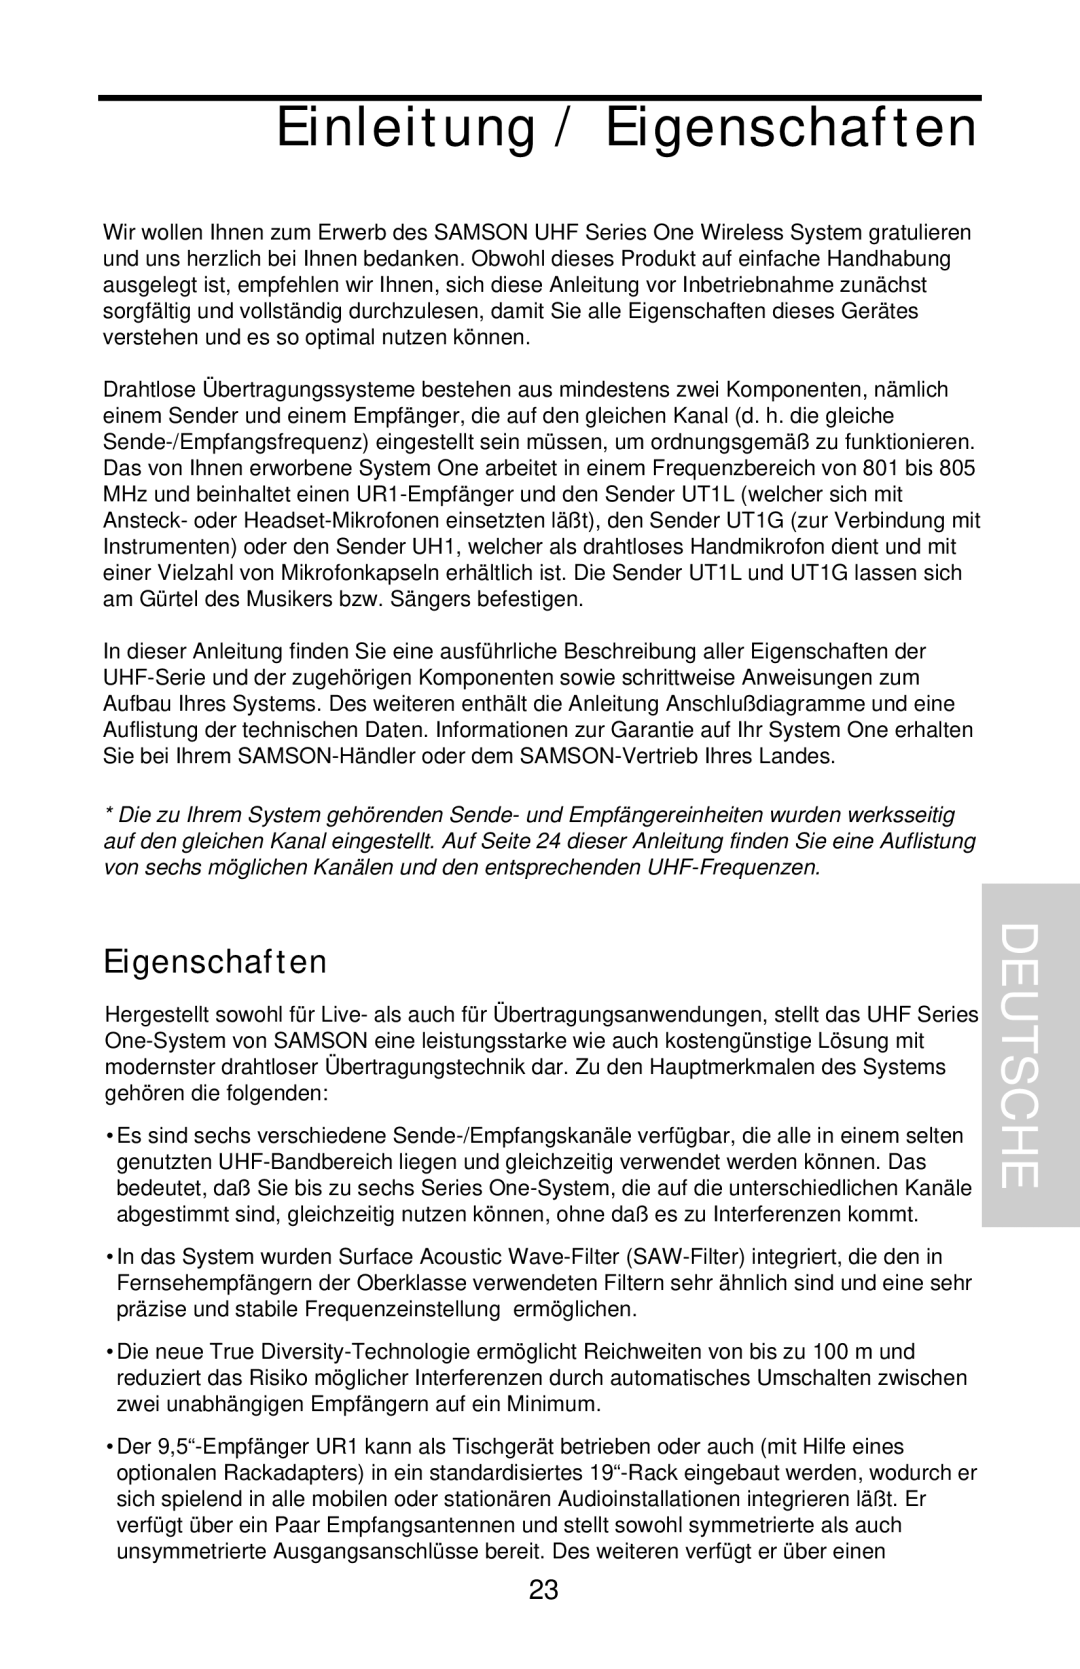 Samson UHF 801 owner manual Einleitung / Eigenschaften, Deutsche 